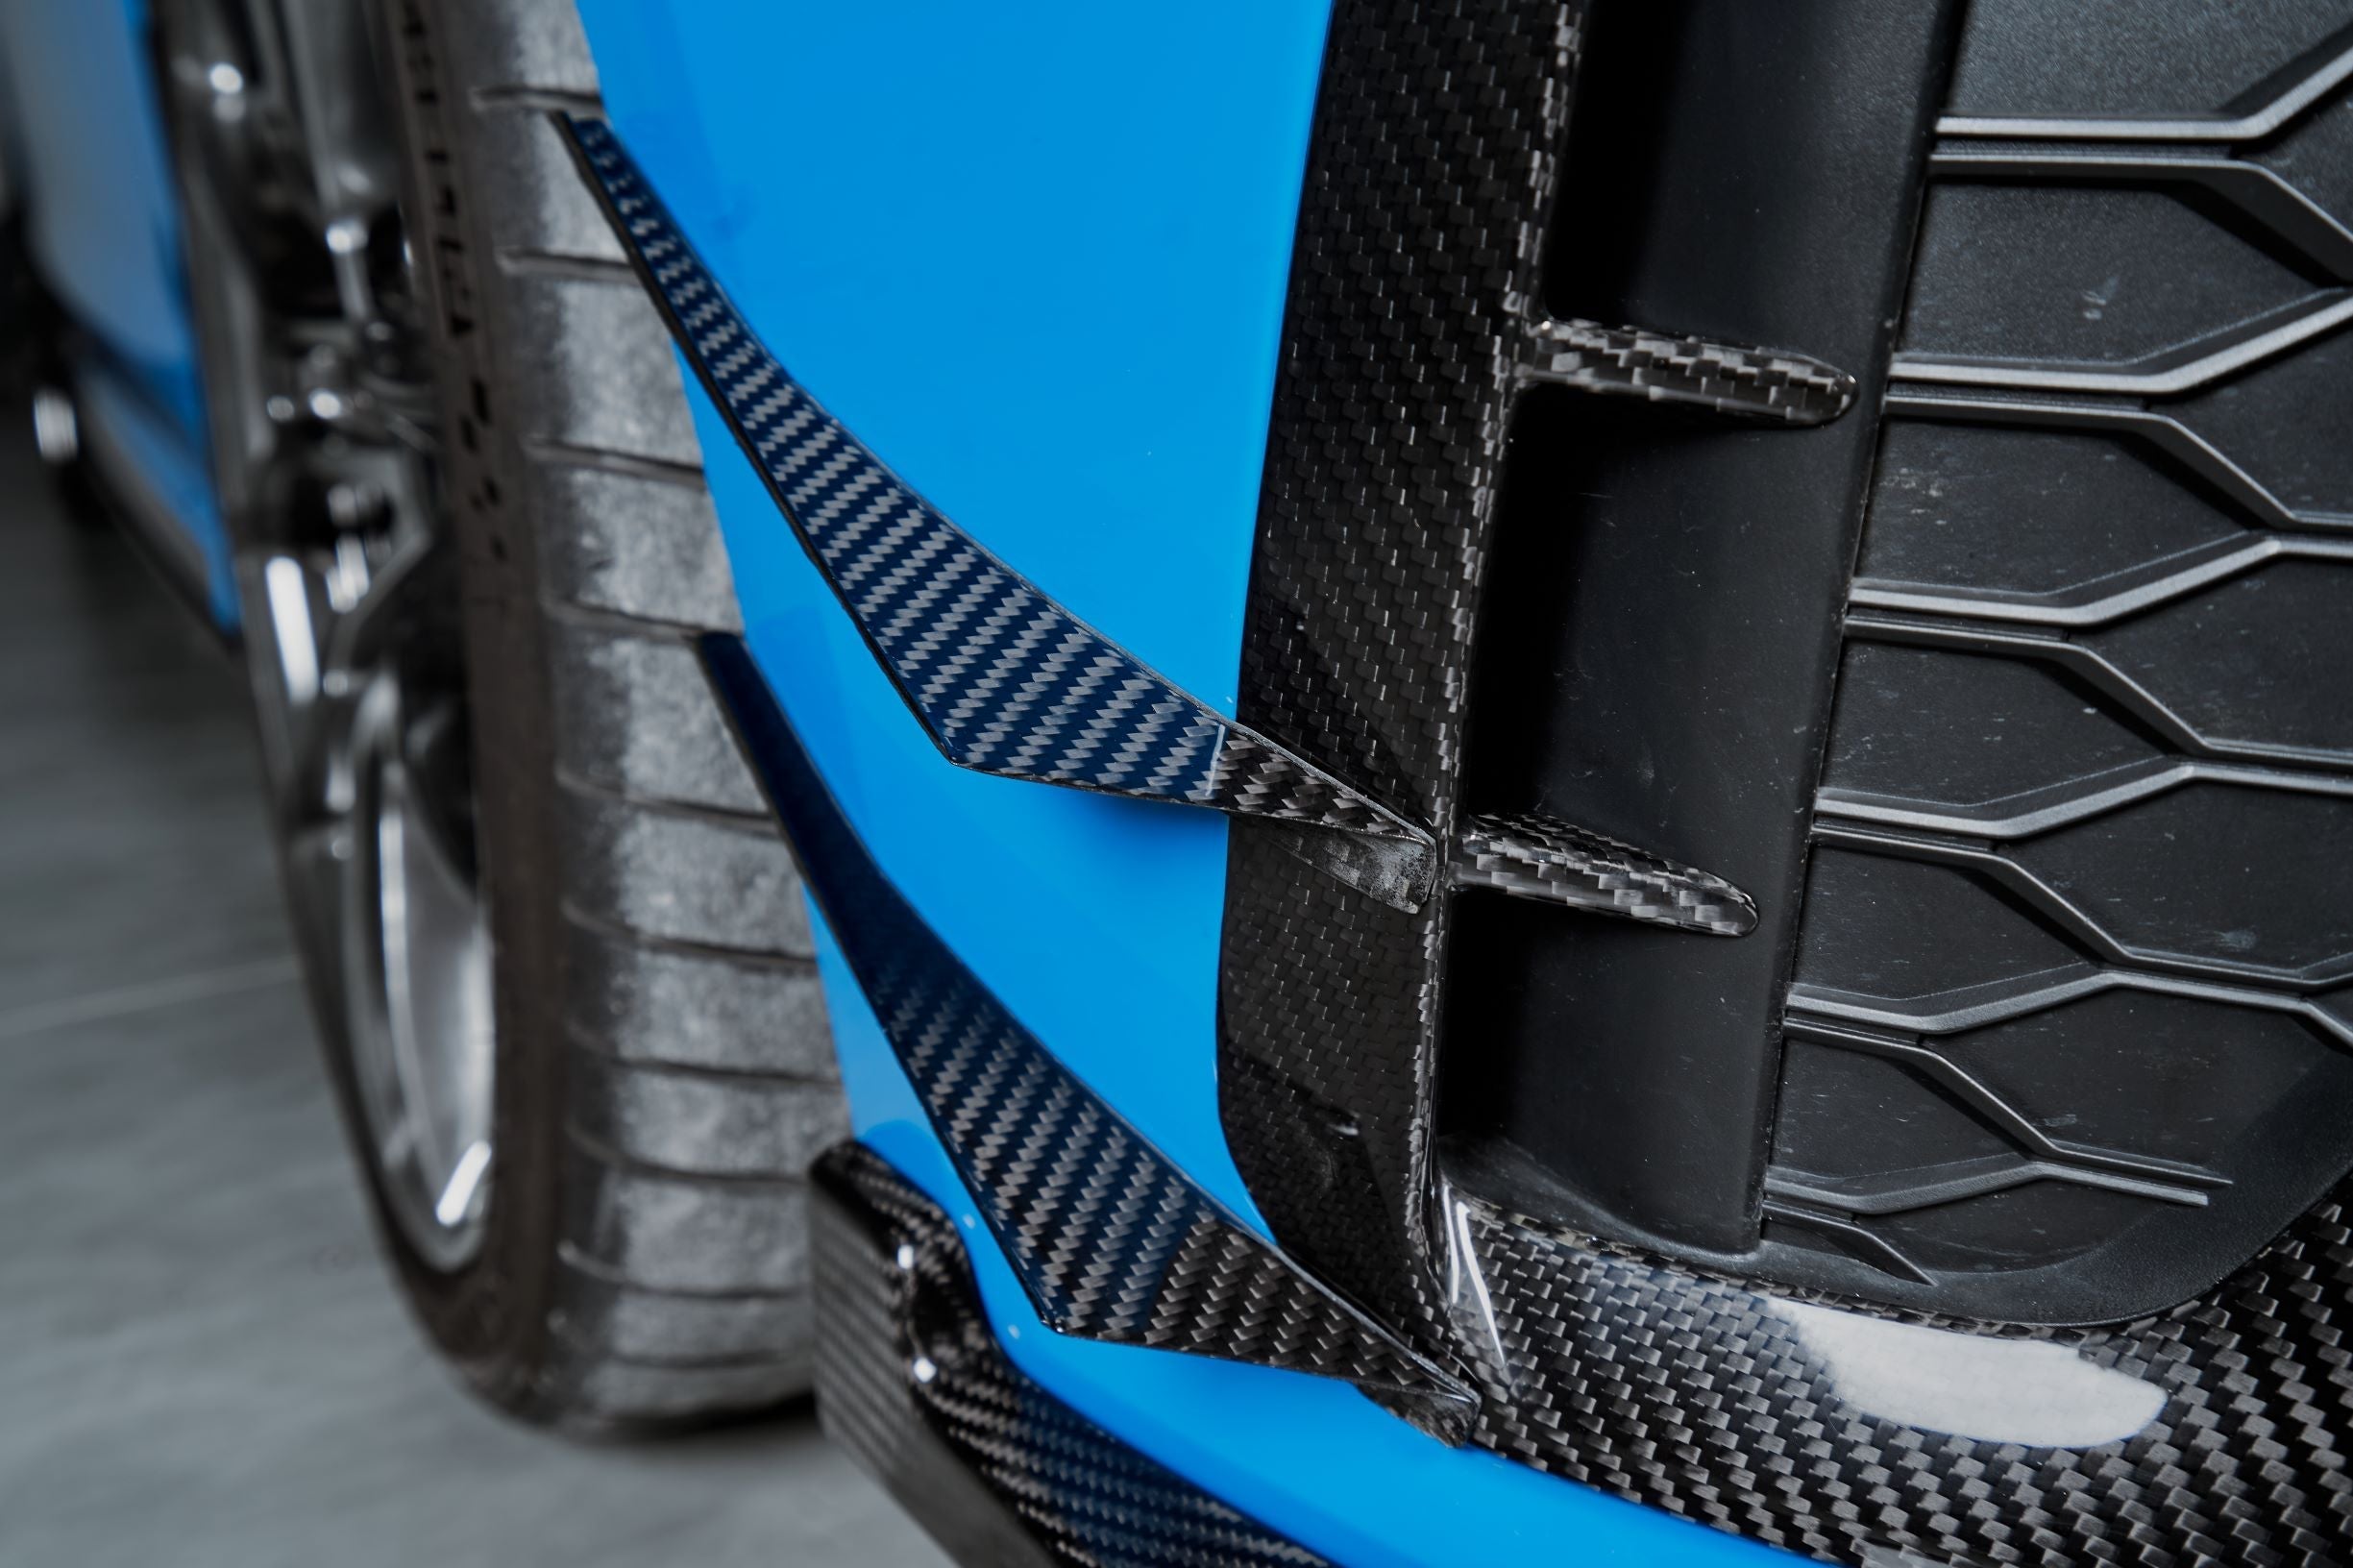 Karbel Carbon Dry Carbon Fiber Upper Valences for BMW 2 Series F22